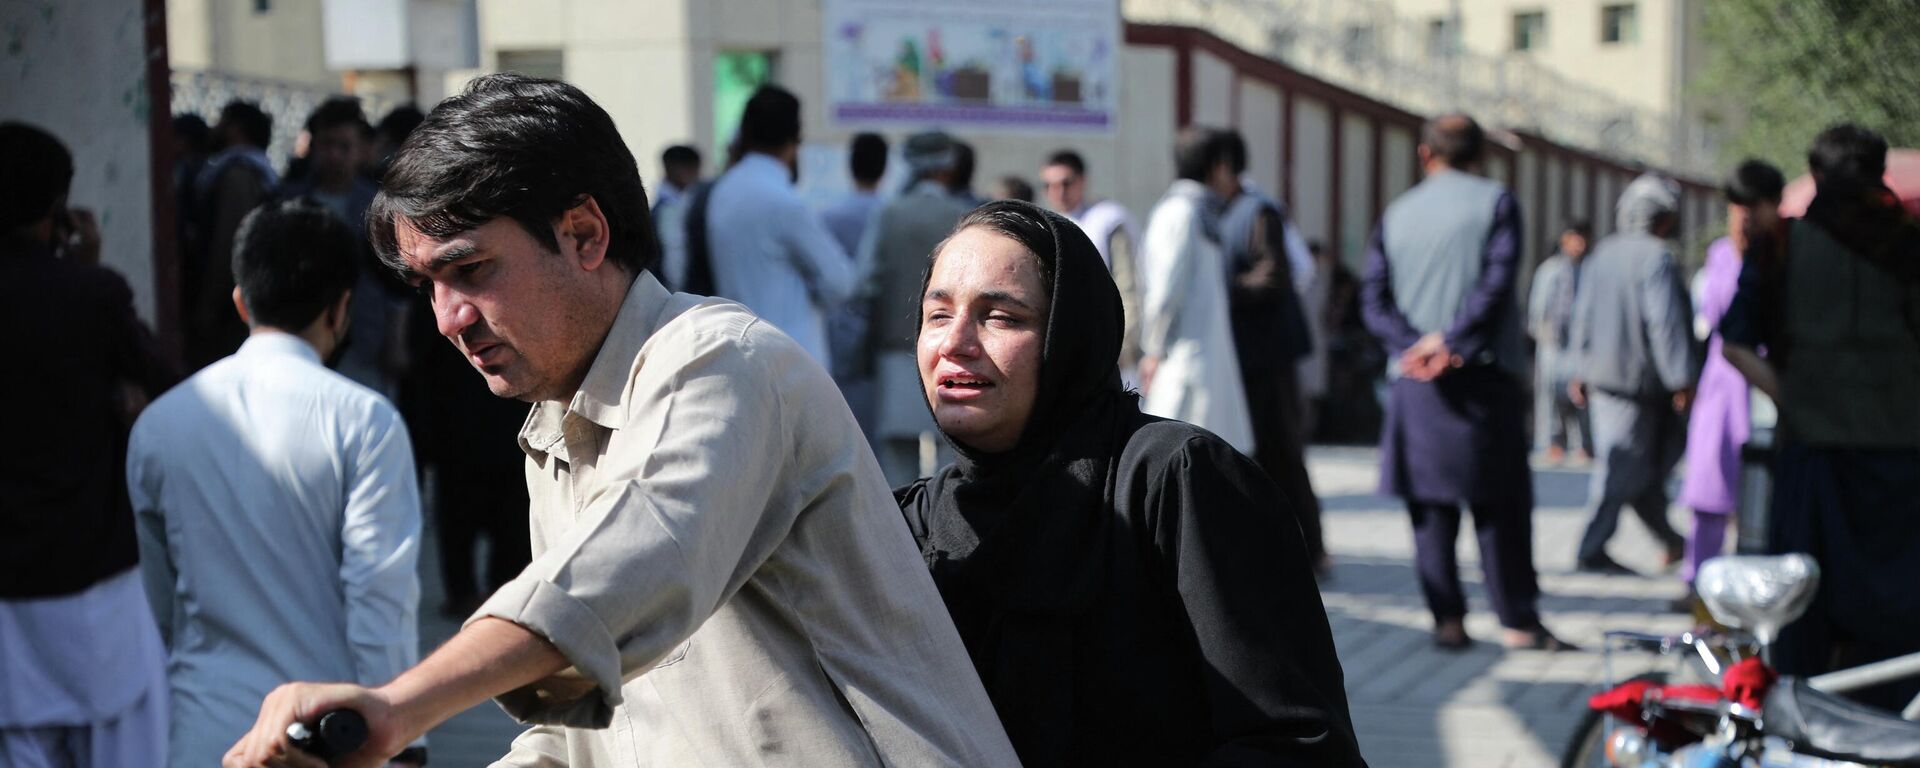 Afganistan'ın başkenti Kabil'deki bir Şii mahallede yer alan eğitim merkezine yönelik intihar saldırısı düzenlendi. Olayda 19 kişi hayatını kaybetti, 27 kişi yaralandı. - Sputnik Türkiye, 1920, 30.09.2022